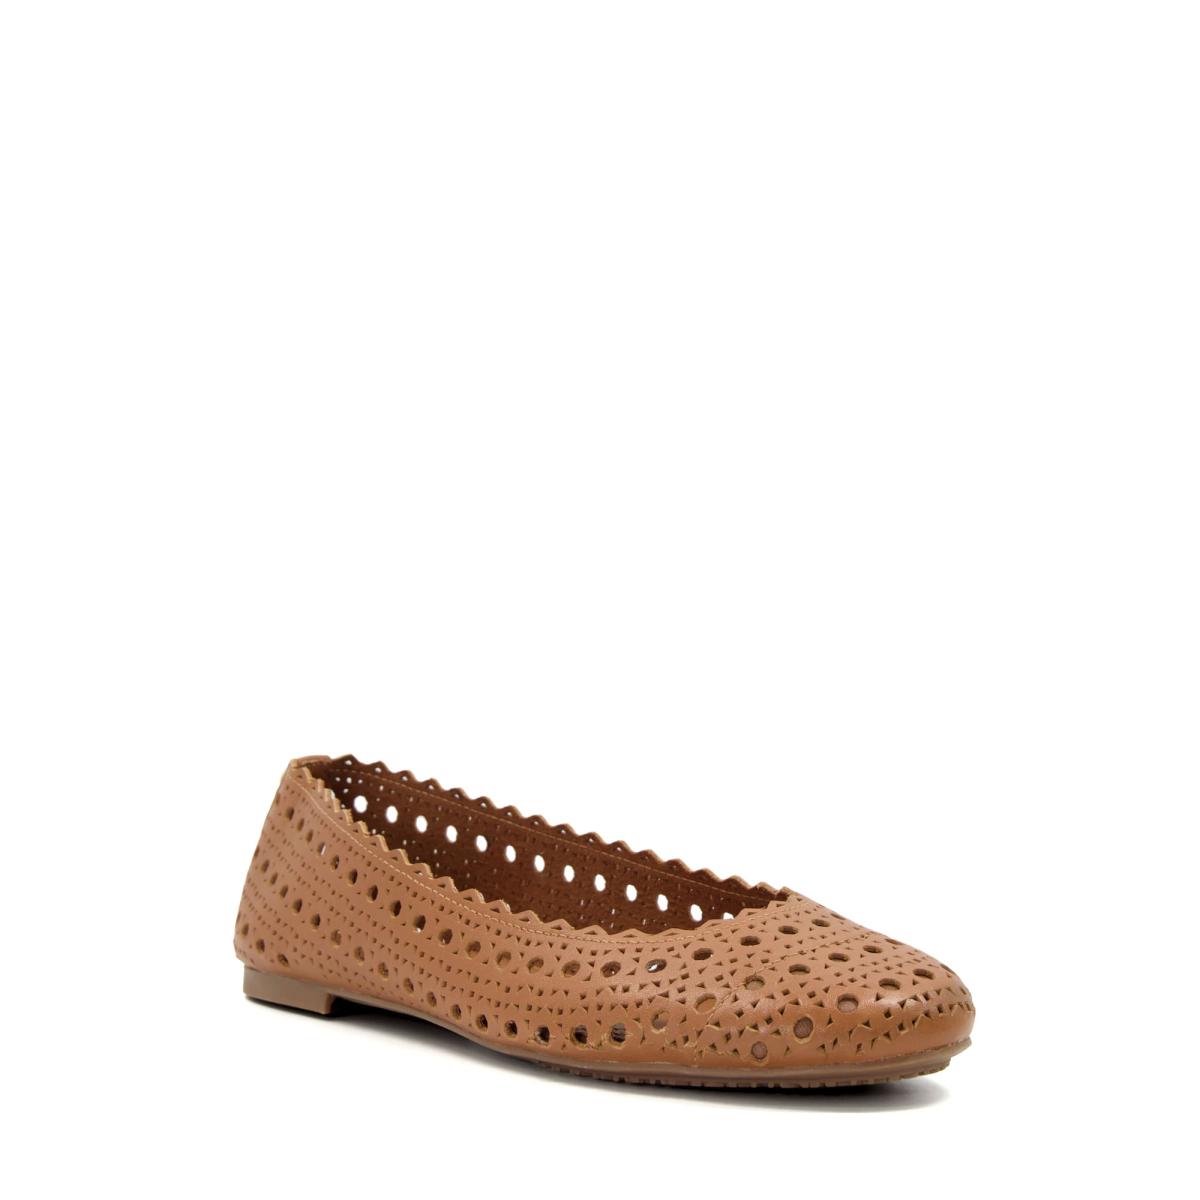 Dune London Harlows - Tan Flat Shoes Women - 3